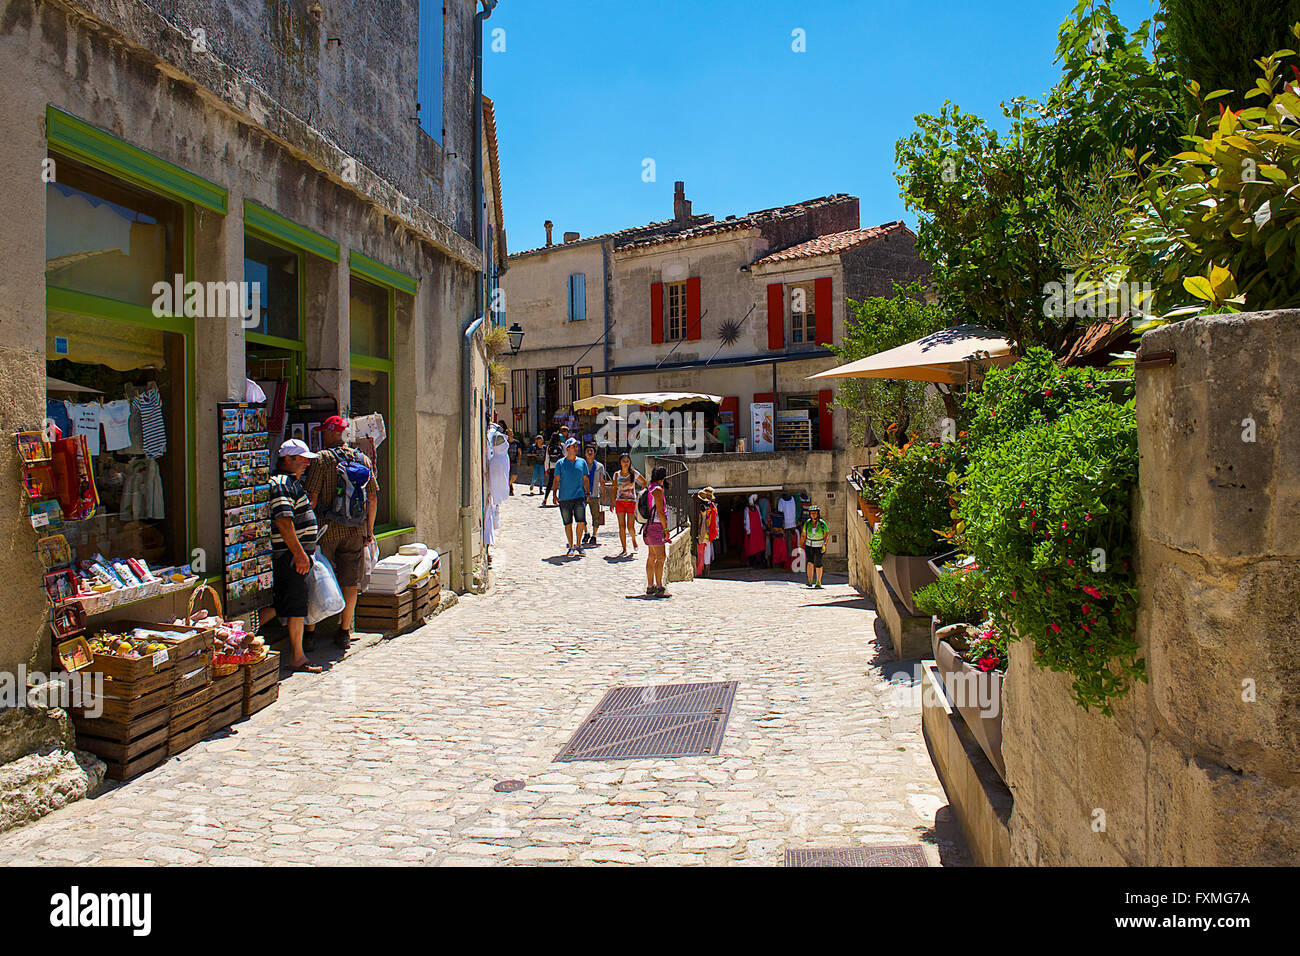 Street View of Les Baux de Provence, France Stock Photo